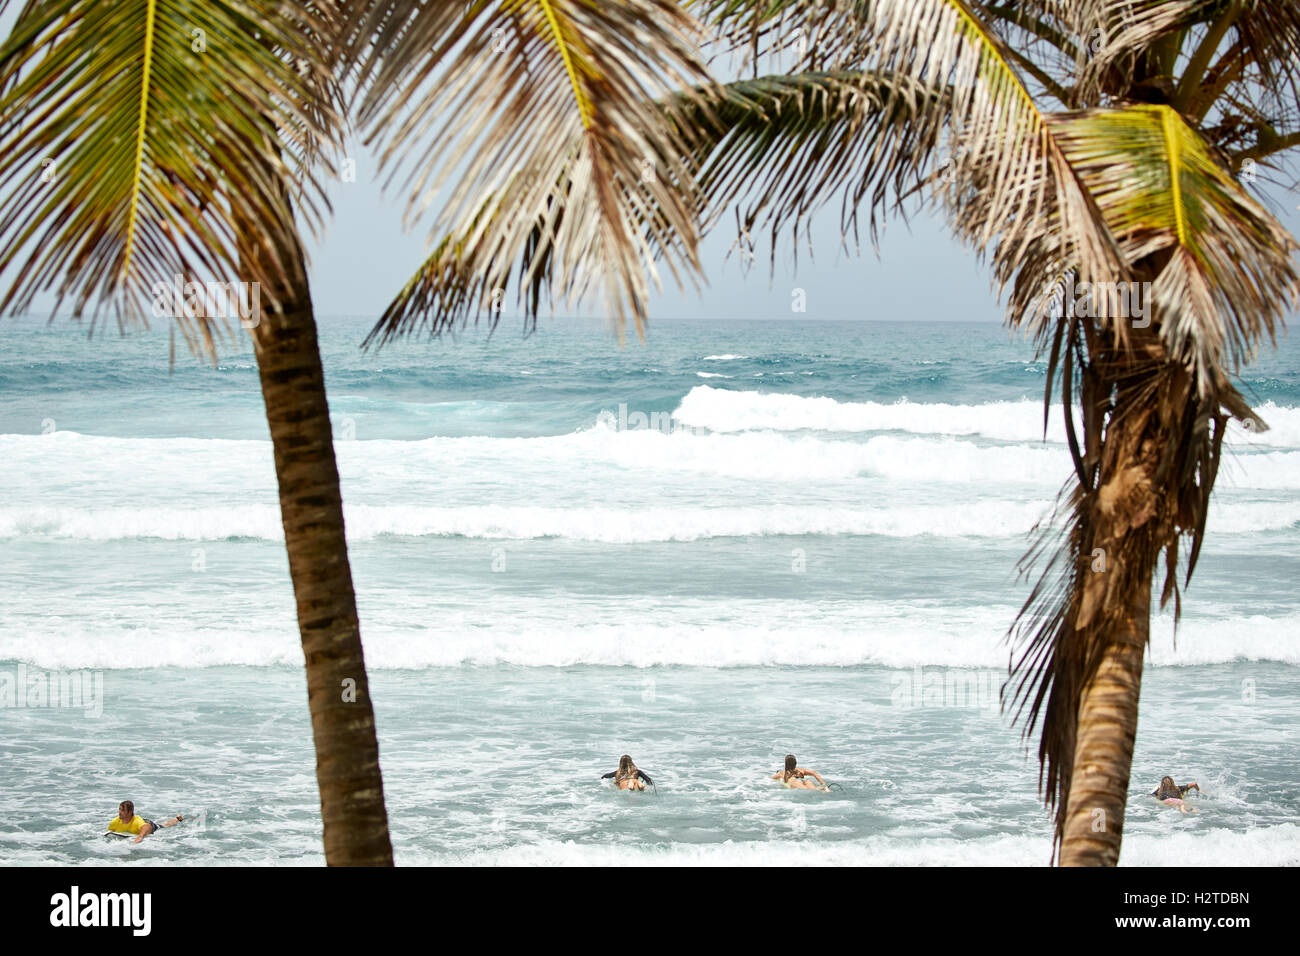 Côte atlantique de la Barbade Bethsabée surfers de jolies jeunes filles Chers adolescents surf surfers copyspace gros rocher de surf Banque D'Images